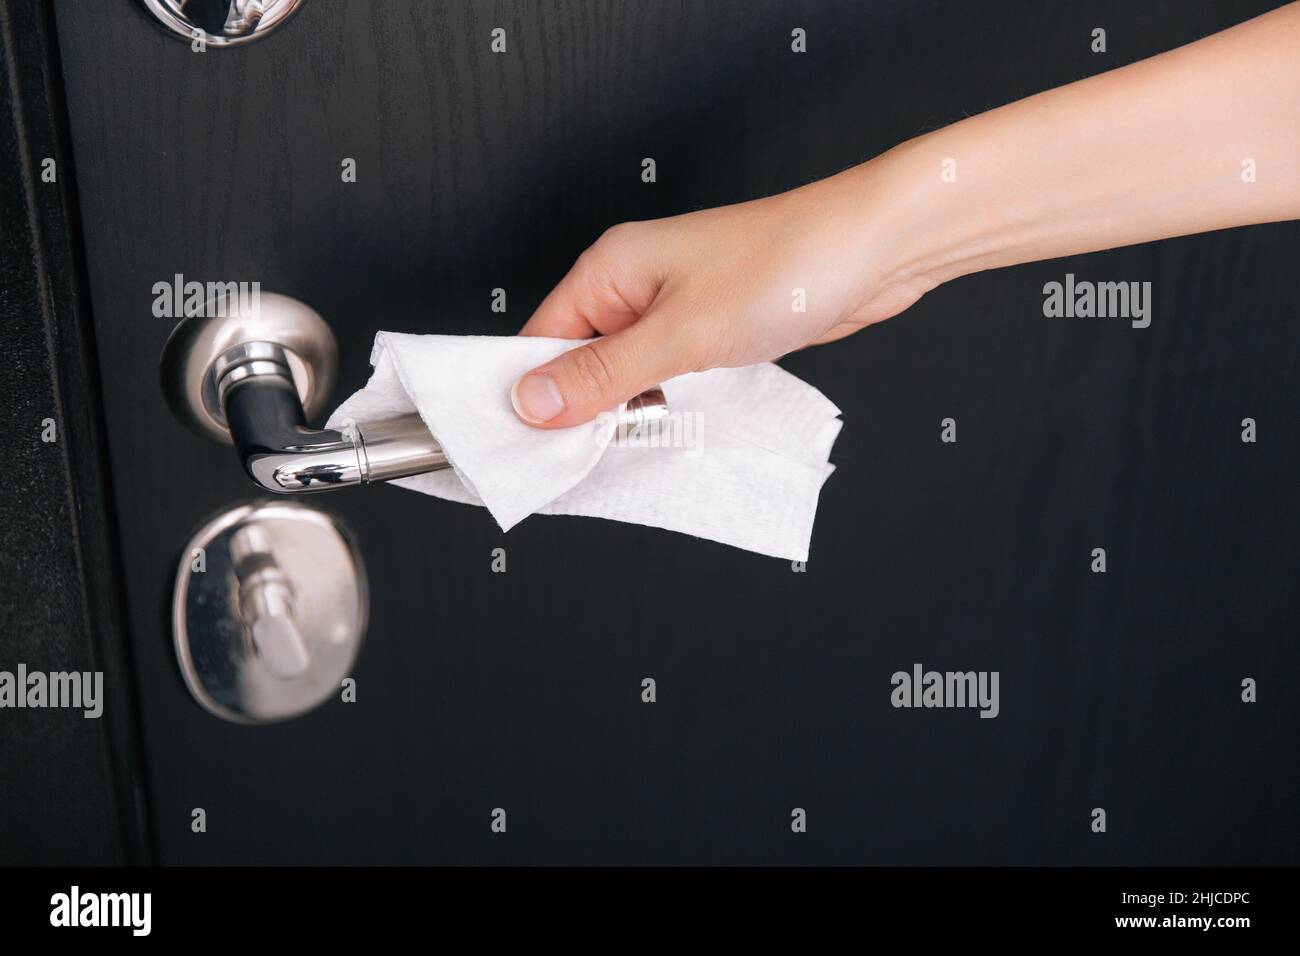 Nettoyage des poignées de porte noires avec une lingette humide antiseptique.Femme main utilisant une serviette pour nettoyer la liaison de la porte de la chambre à la maison.Désinfectez la prévention des surfaces dans Banque D'Images